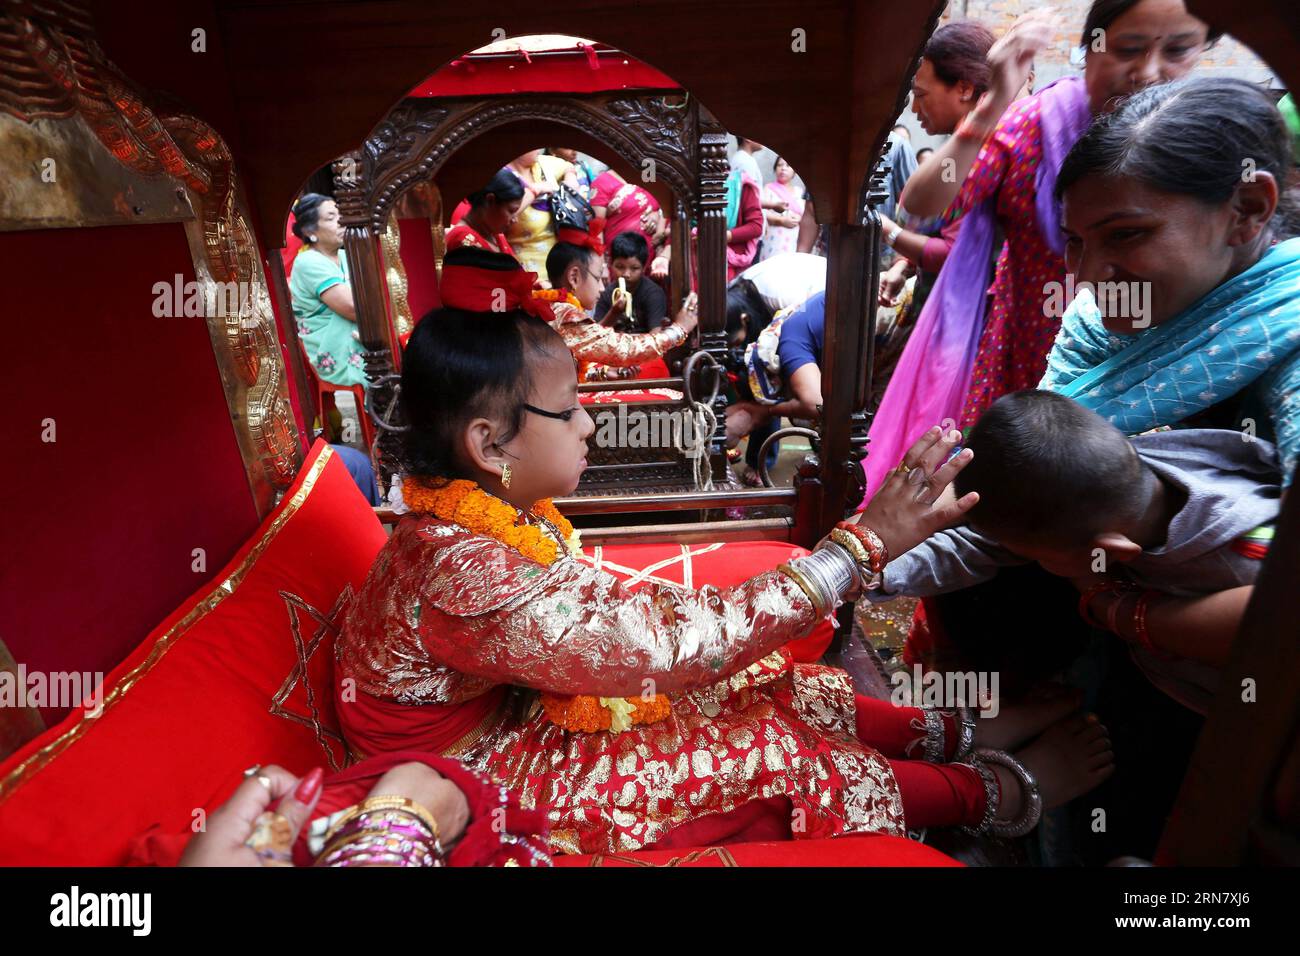 (150924) -- KATMANDOU, 24 septembre 2015 -- le dieu vivant du Népal comme la réincarnation du Seigneur Ganesh (L) offre des bénédictions à un dévot du festival Indrajatra à Katmandou, Népal, le 24 septembre 2015.) NEPAL-KATHMANDU-INDRAJATRA FESTIVAL SunilxSharma PUBLICATIONxNOTxINxCHN Katmandou sept 24 2015 Népal S Dieu vivant comme la réincarnation du Seigneur Ganesh l OFFRE DES BÉNÉDICTIONS à un dévot du Festival Indrajatra à Katmandou Népal sept 24 2015 Népal Katmandou Festival Indrajatra SunilxSharma PUBLICATIONxNOTxINxINxCHN Banque D'Images